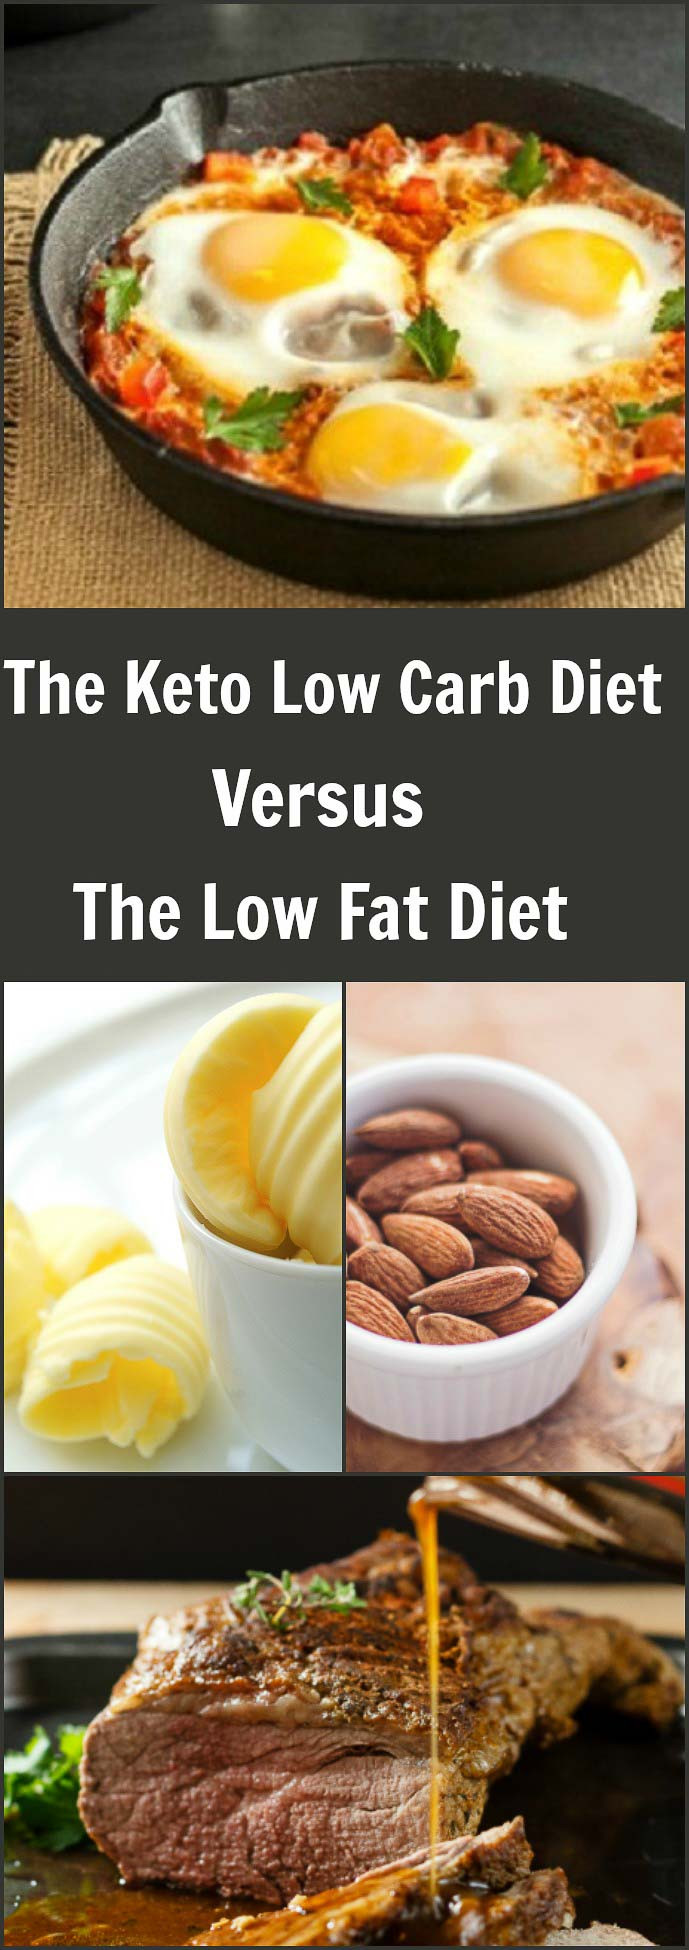 Low Carb Vs Low Fat Diet
 Ketogenic Low Carb Diet Versus Low Fat Diet Plans